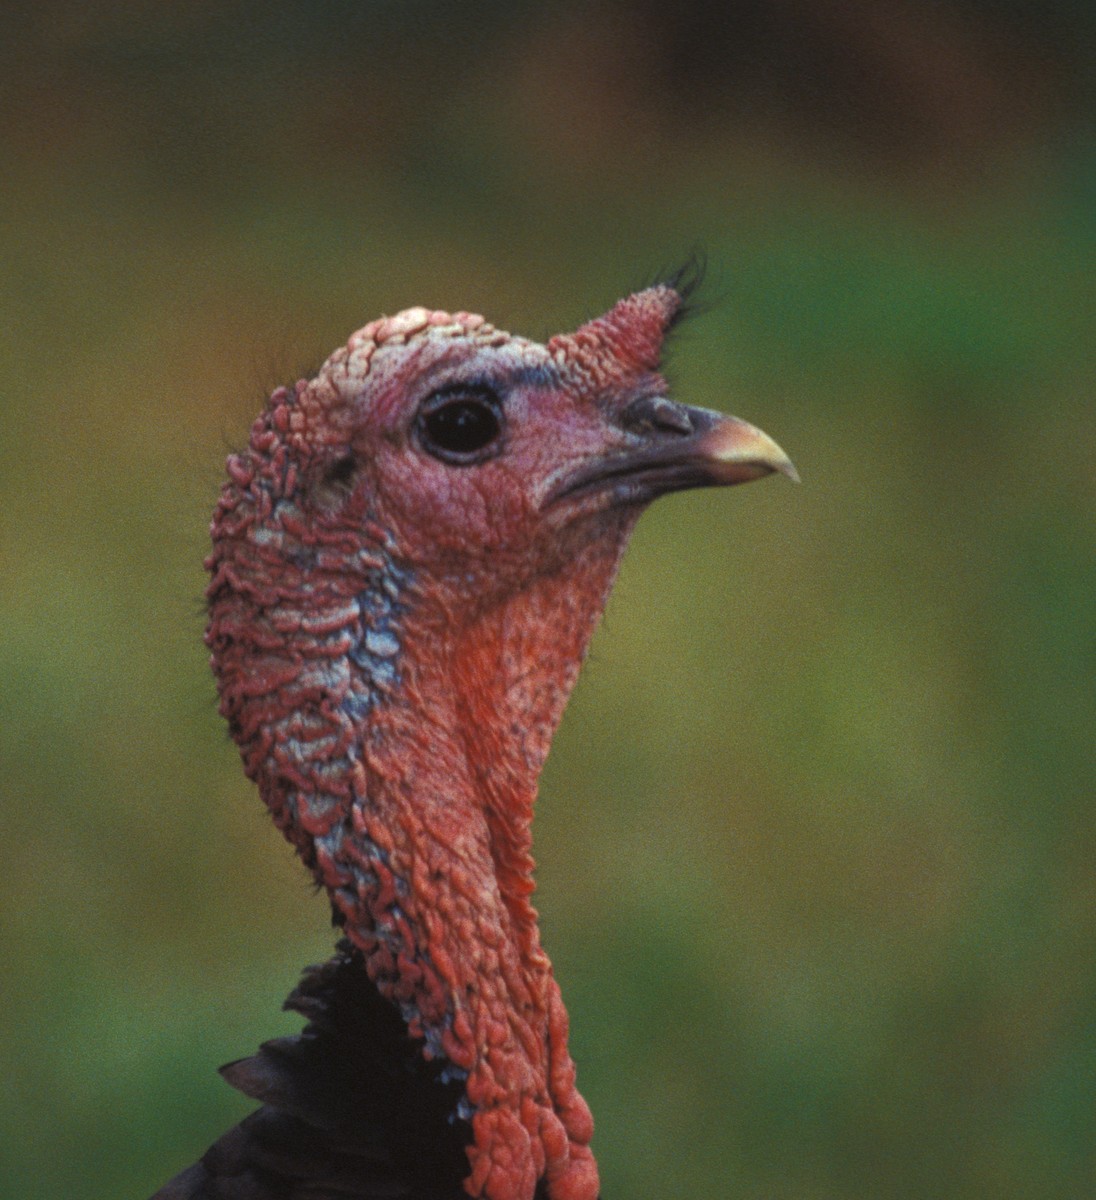 Wild Turkey - marvin hyett